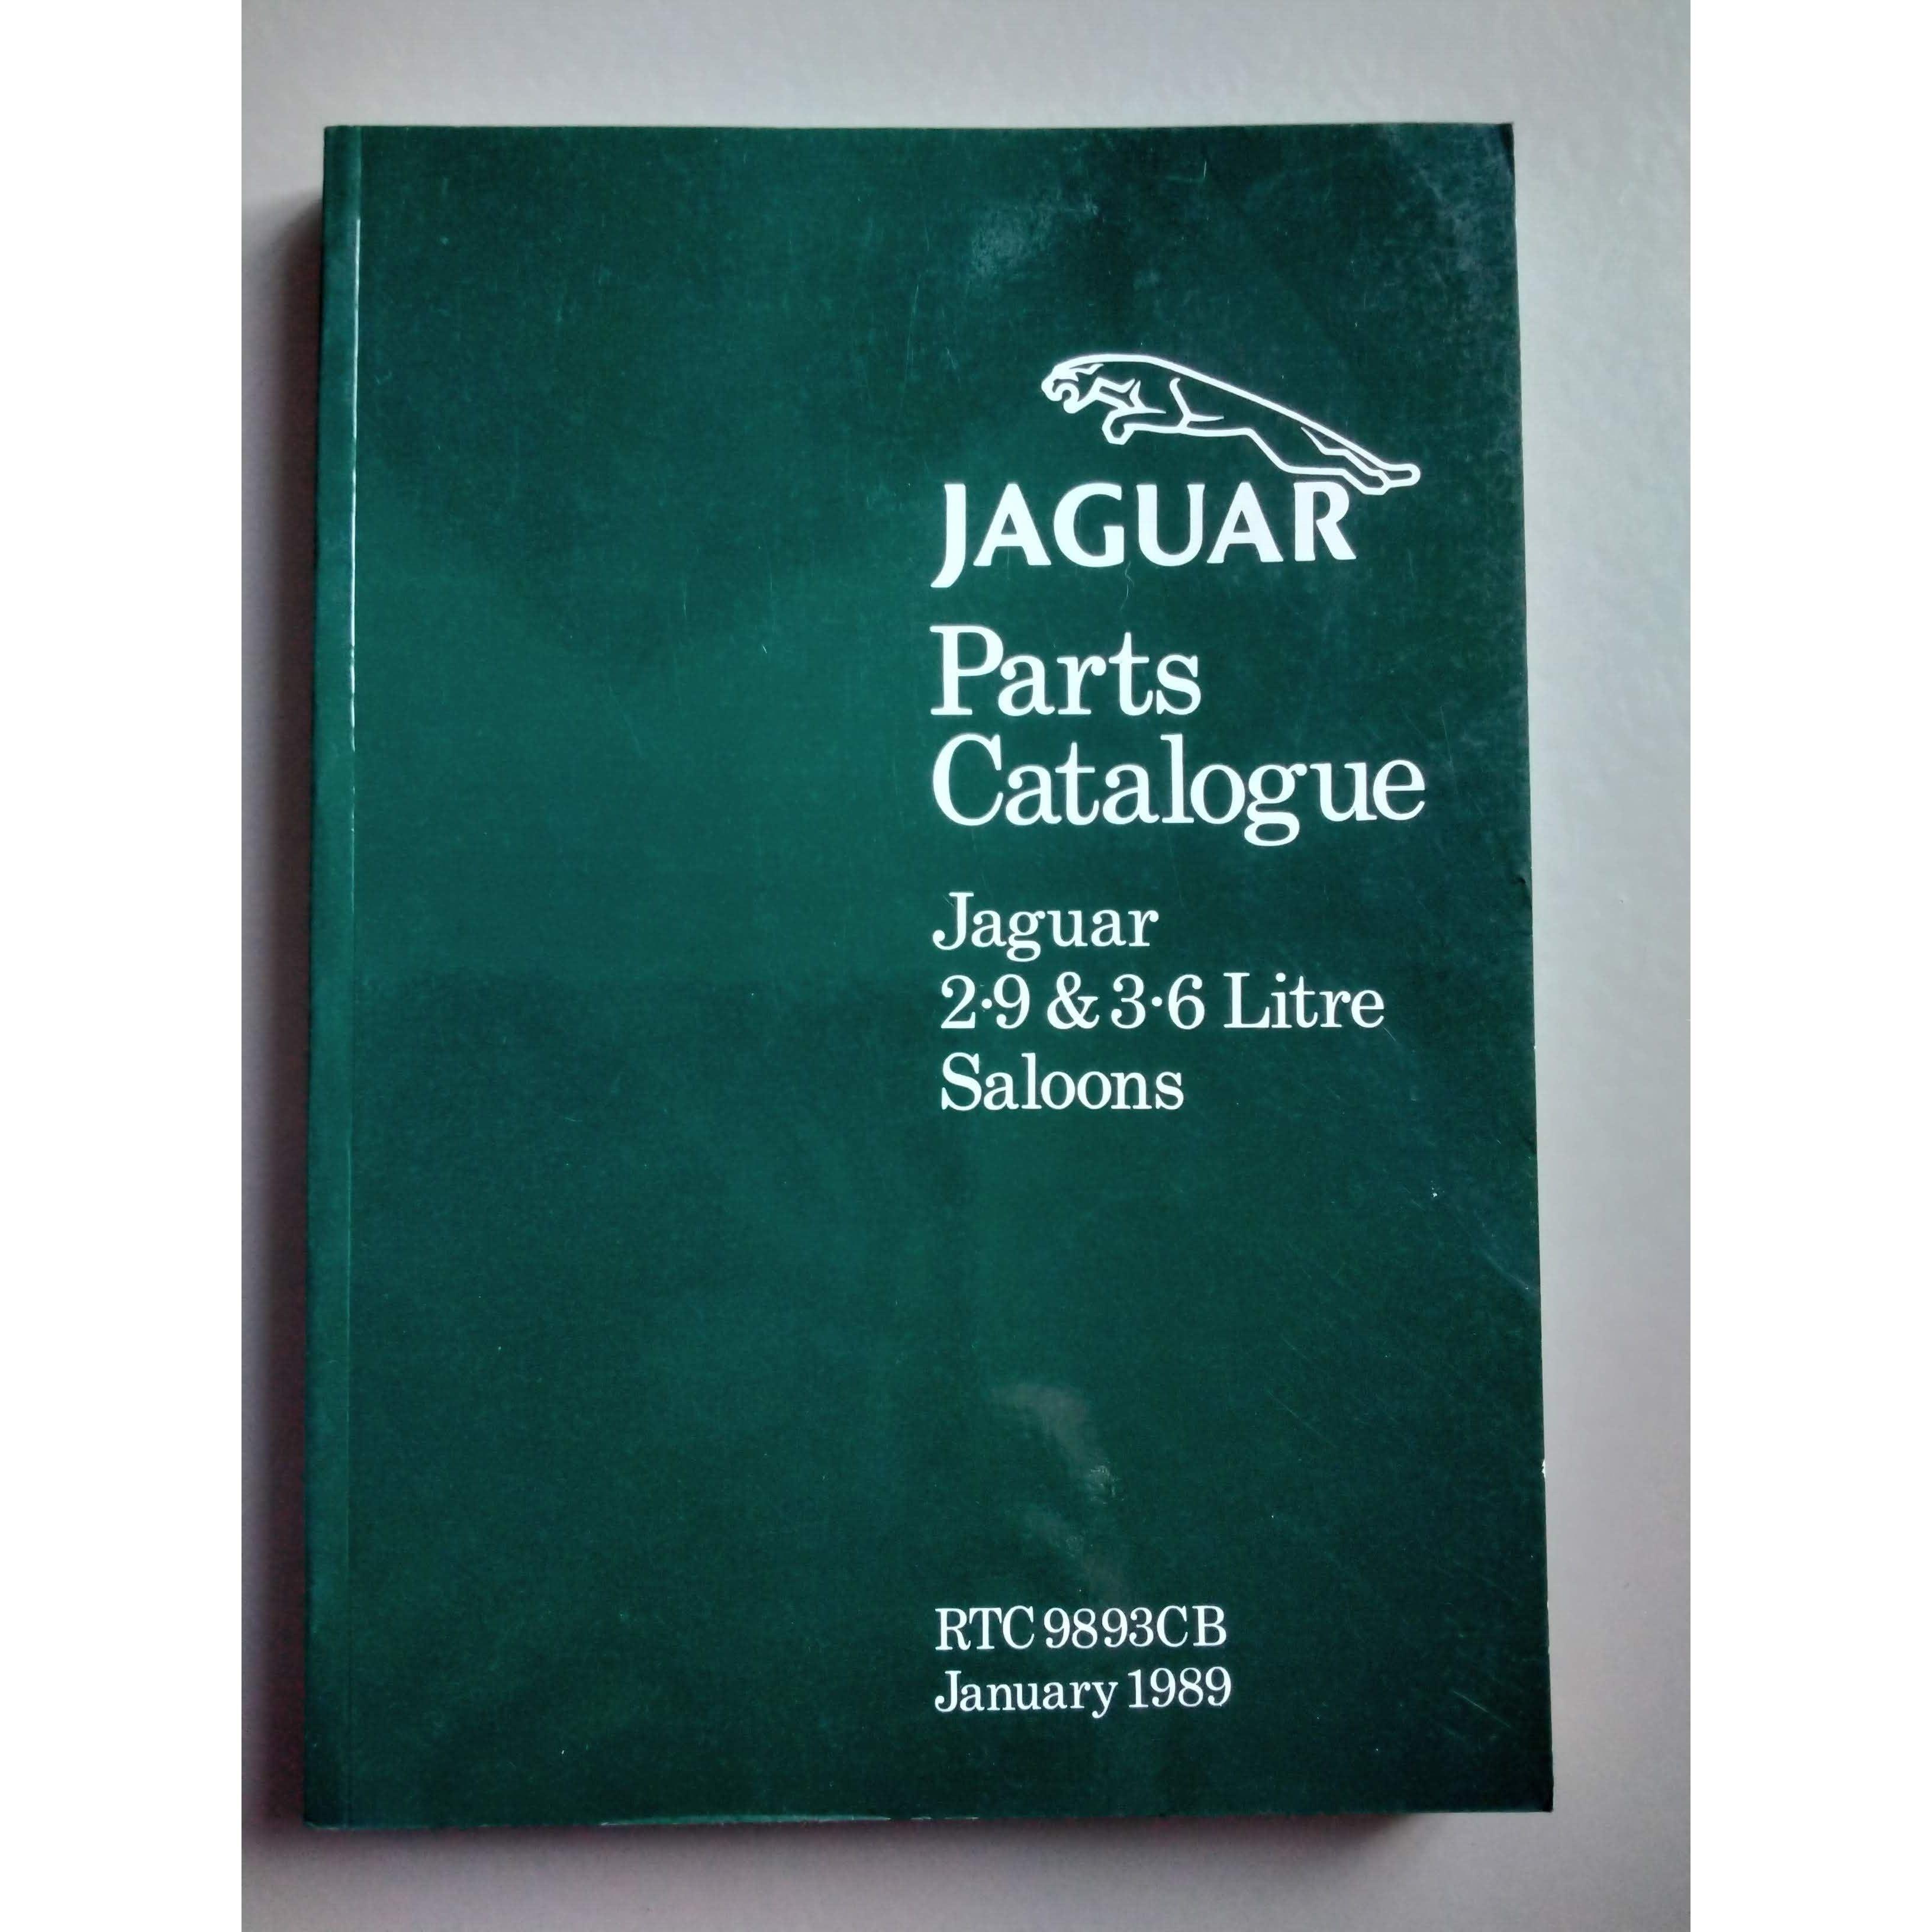 Jaguar Parts Catalogue 2.9&3.6 litre - Berry Smink British Car Parts